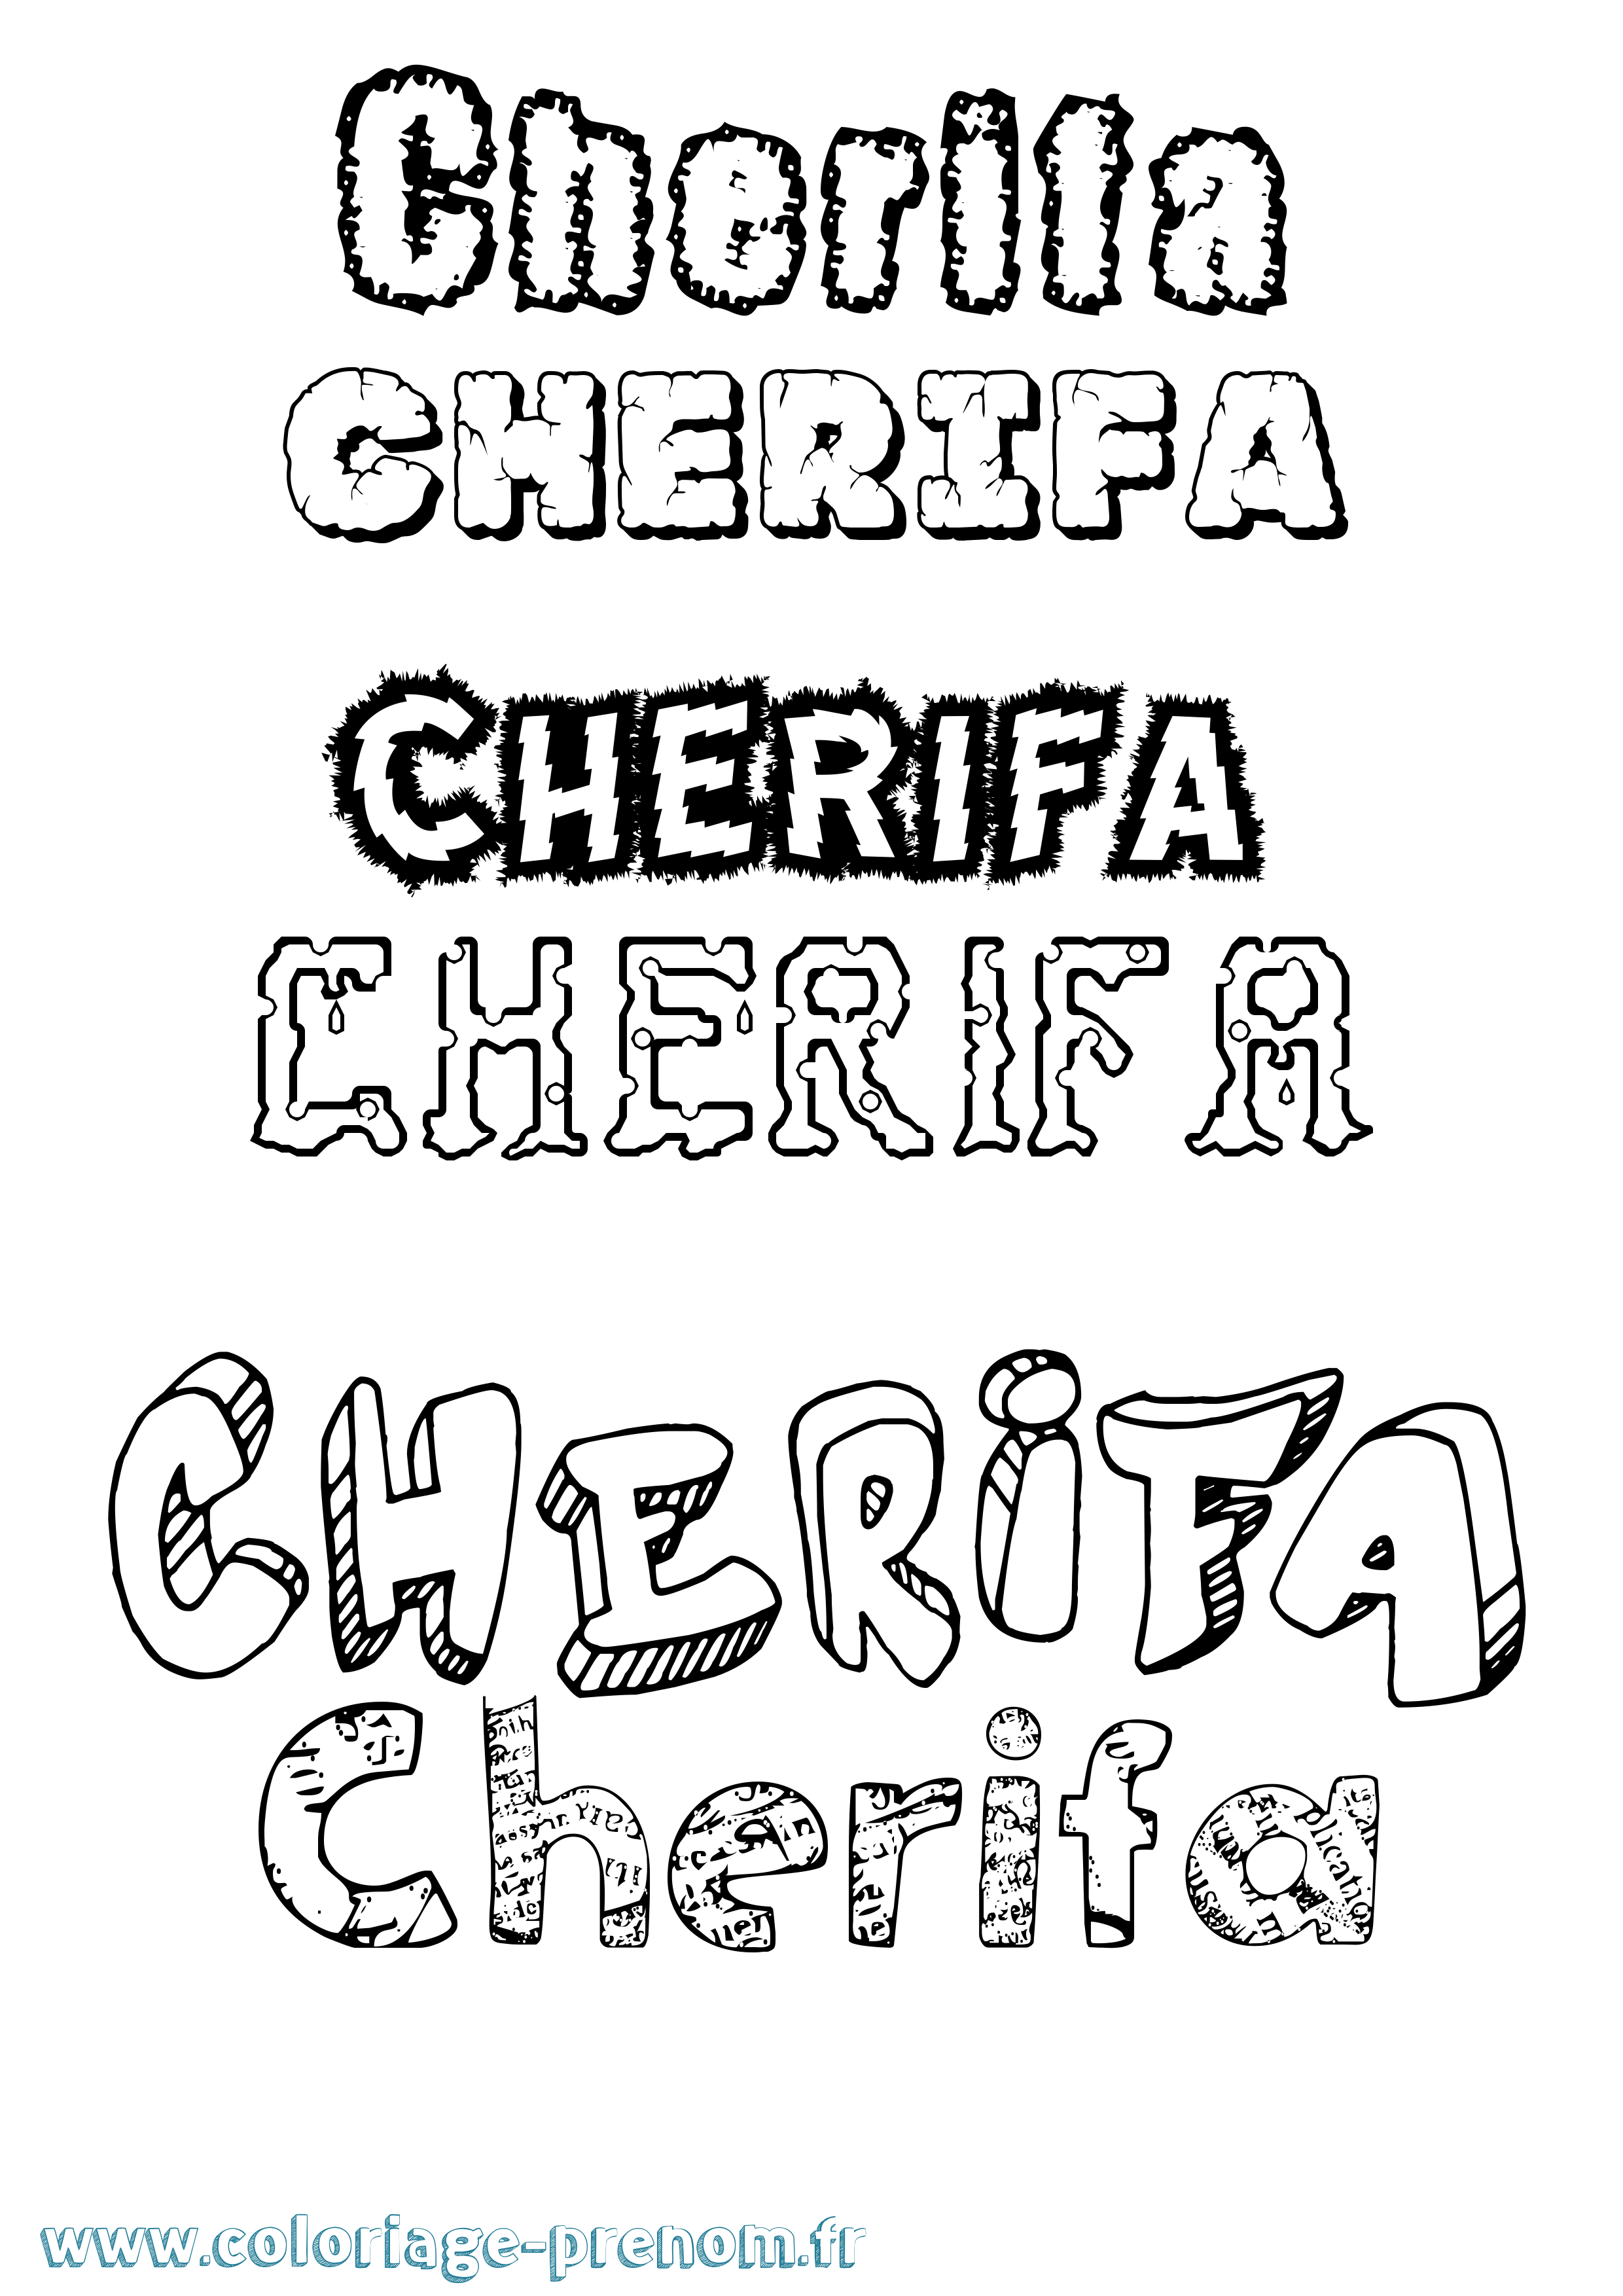 Coloriage prénom Cherifa Destructuré